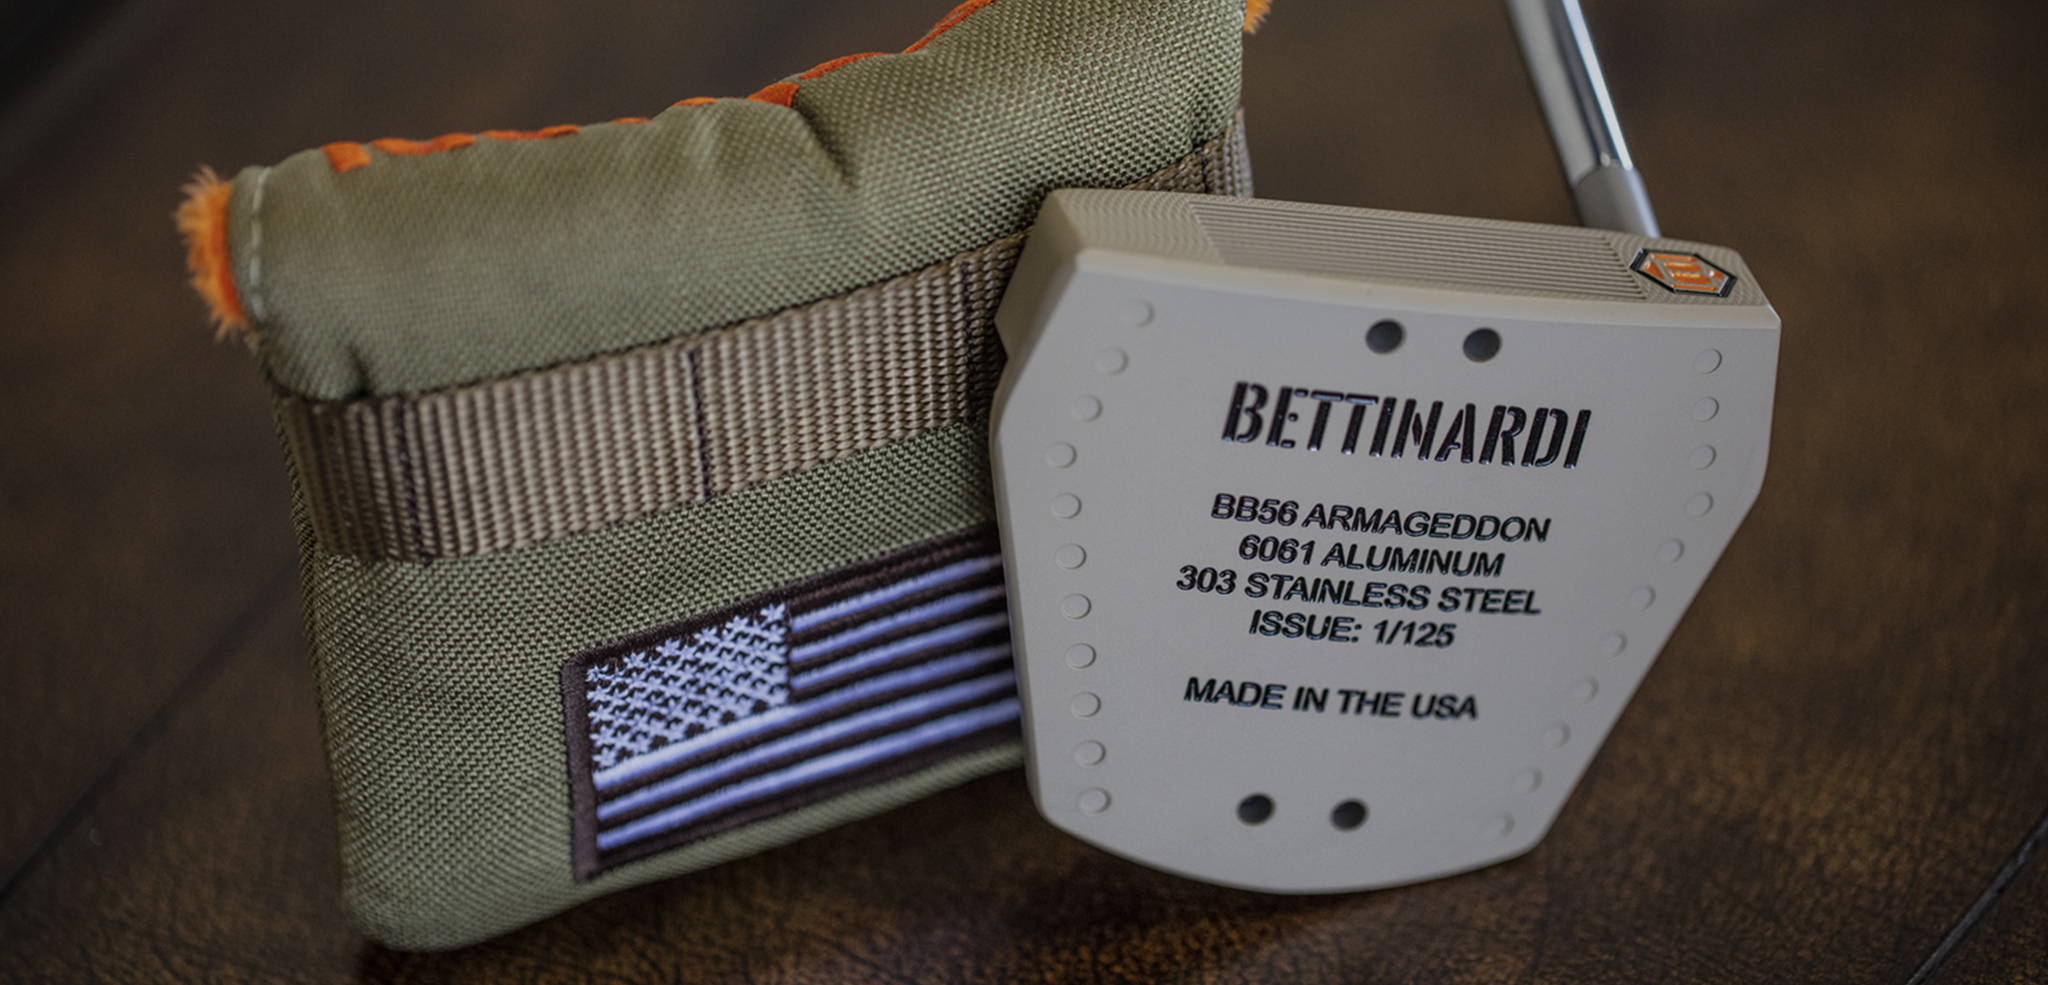 Bettinardi giới thiệu gậy putter BB56 Armageddon lấy cảm hứng từ quân đội